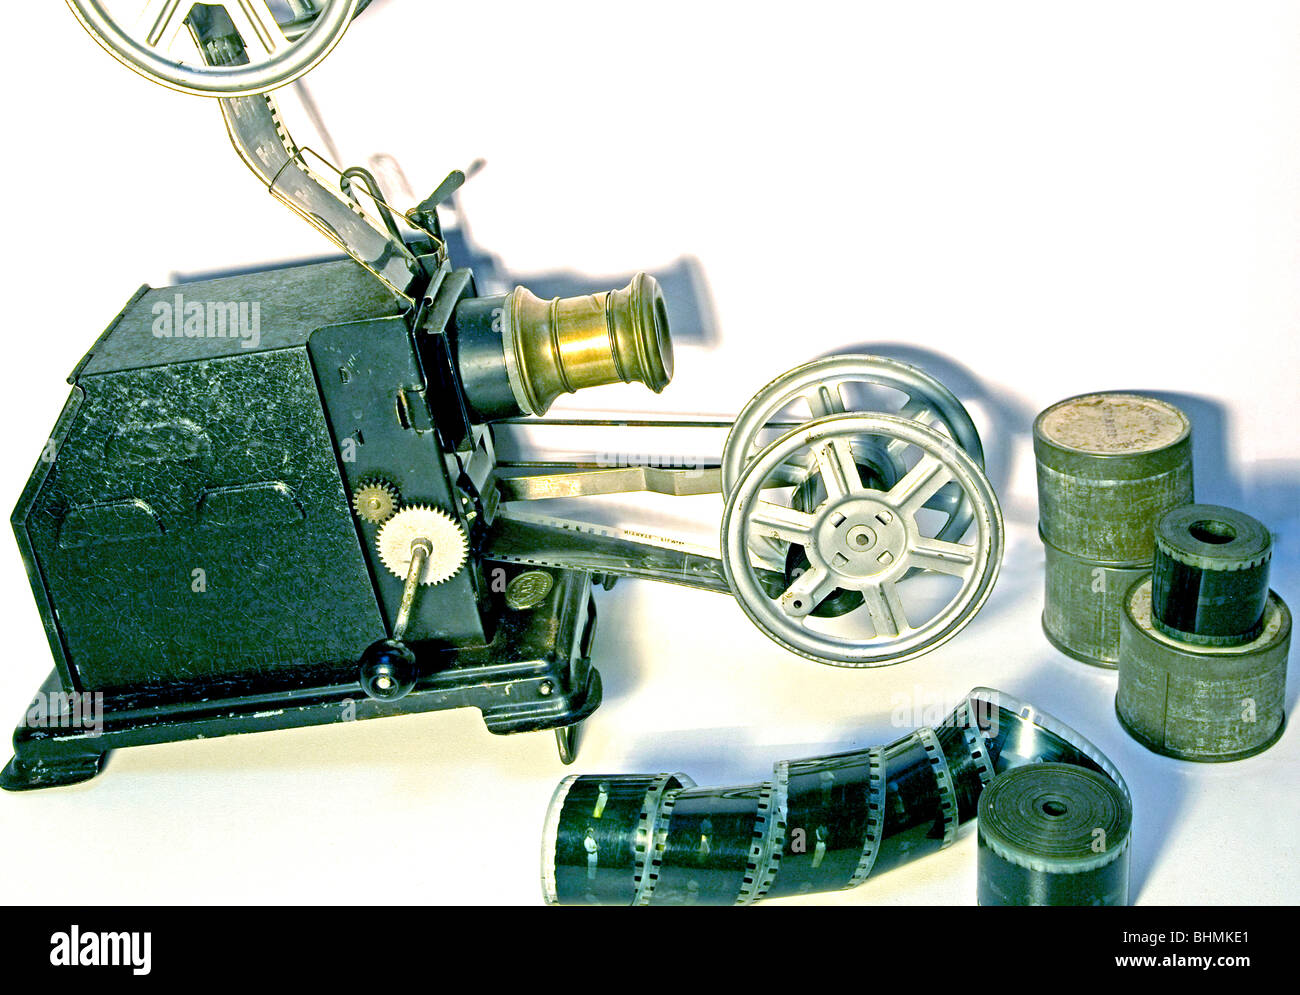 20e siècle accueil projecteur cinéma 35 mm Banque D'Images